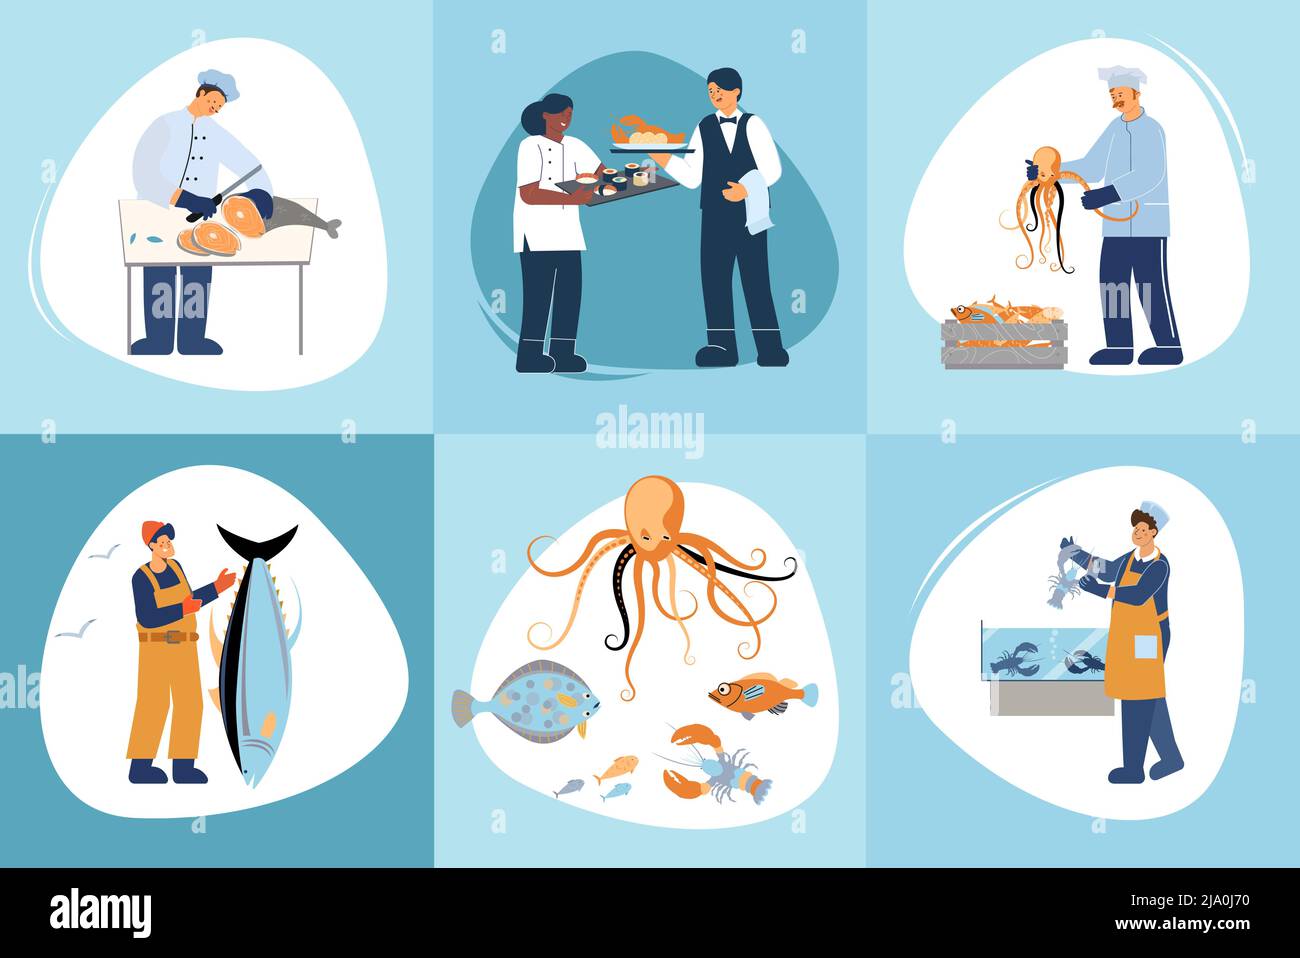 Ensemble de composition plate avec divers personnages humains de fruits de mer attraper la cuisine vendre poisson servant repas illustration vectorielle isolée Illustration de Vecteur